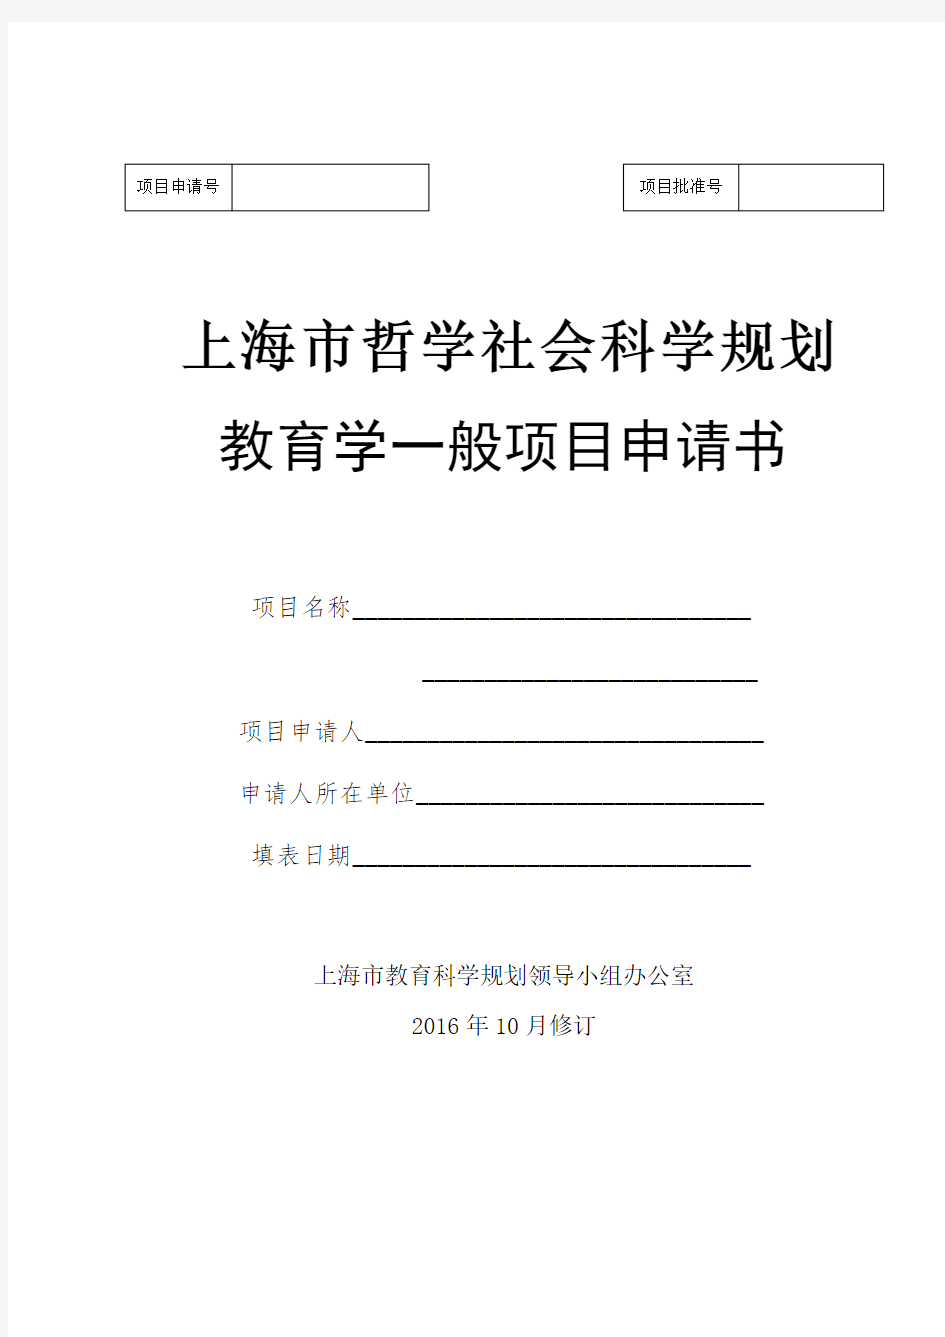 上海市哲学社会科学规划教育学一般项目申请书